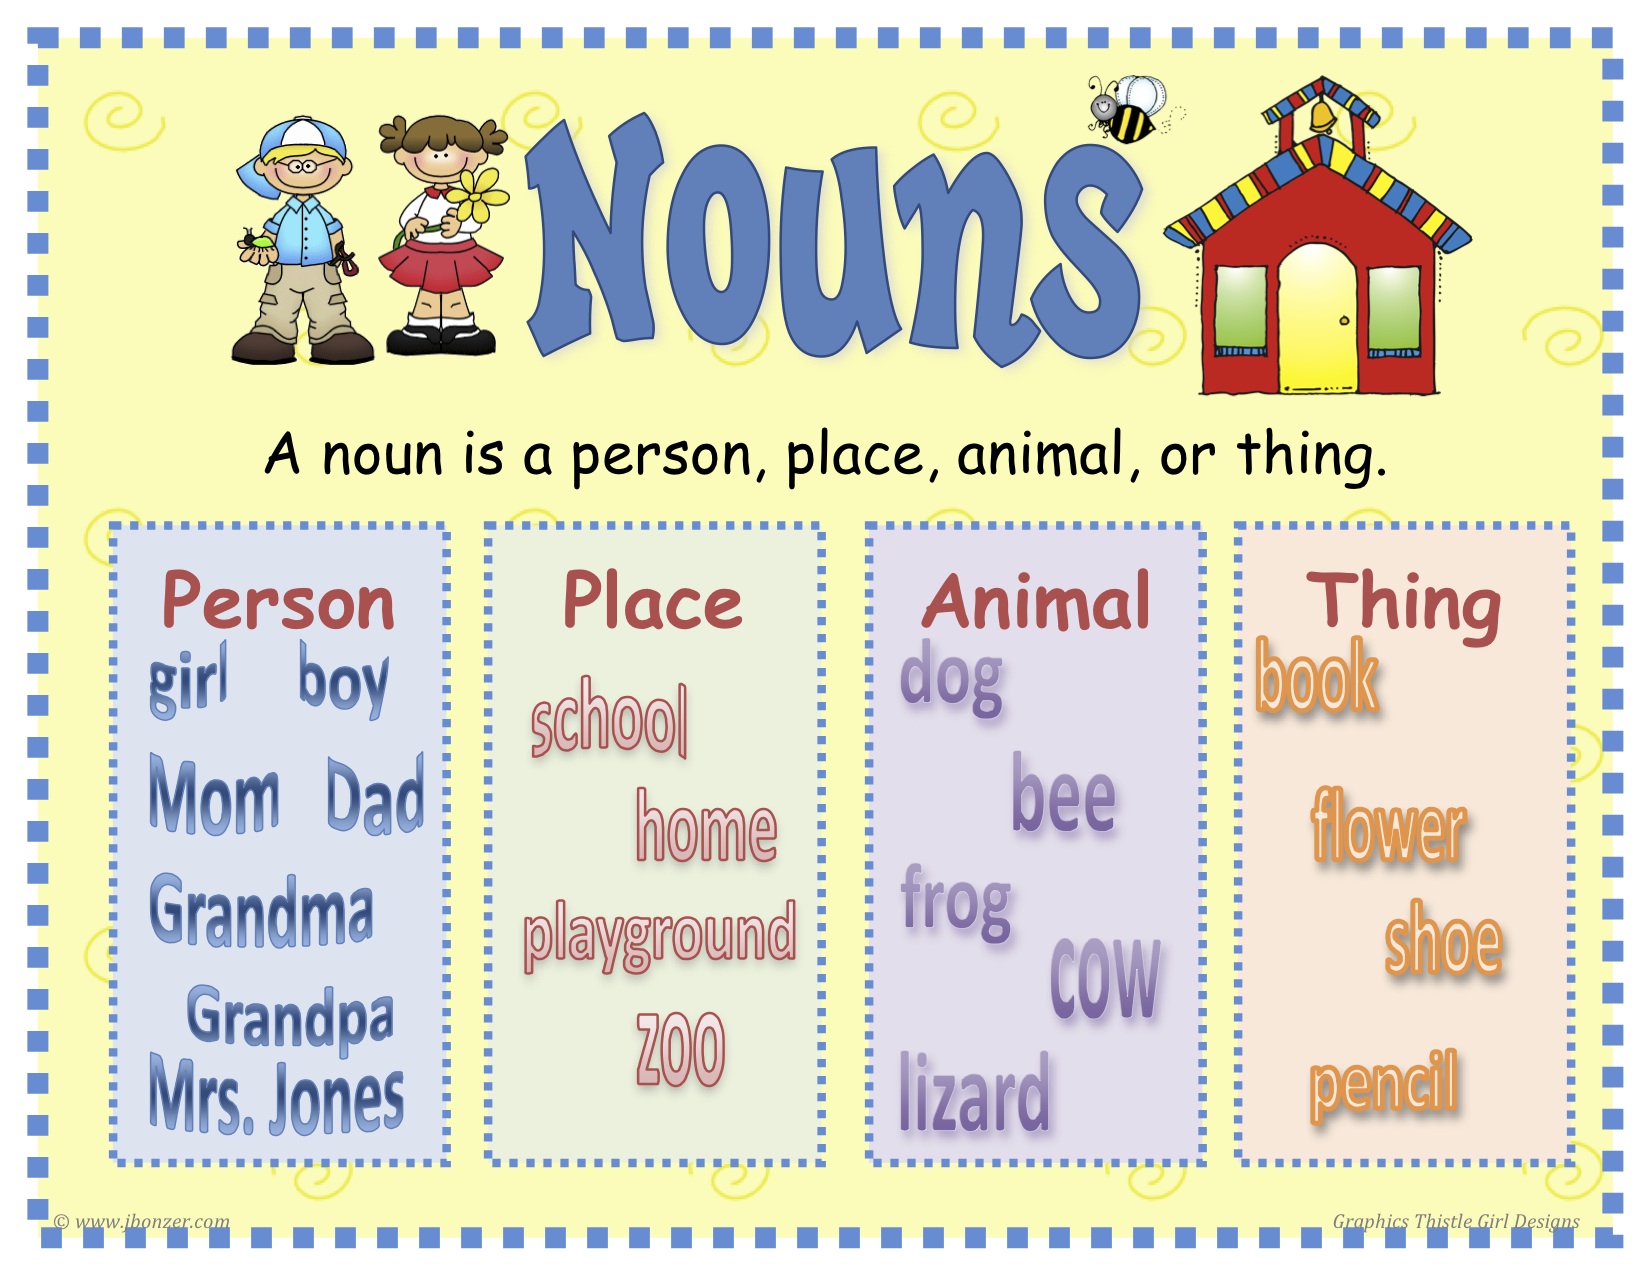 nouns-teachers